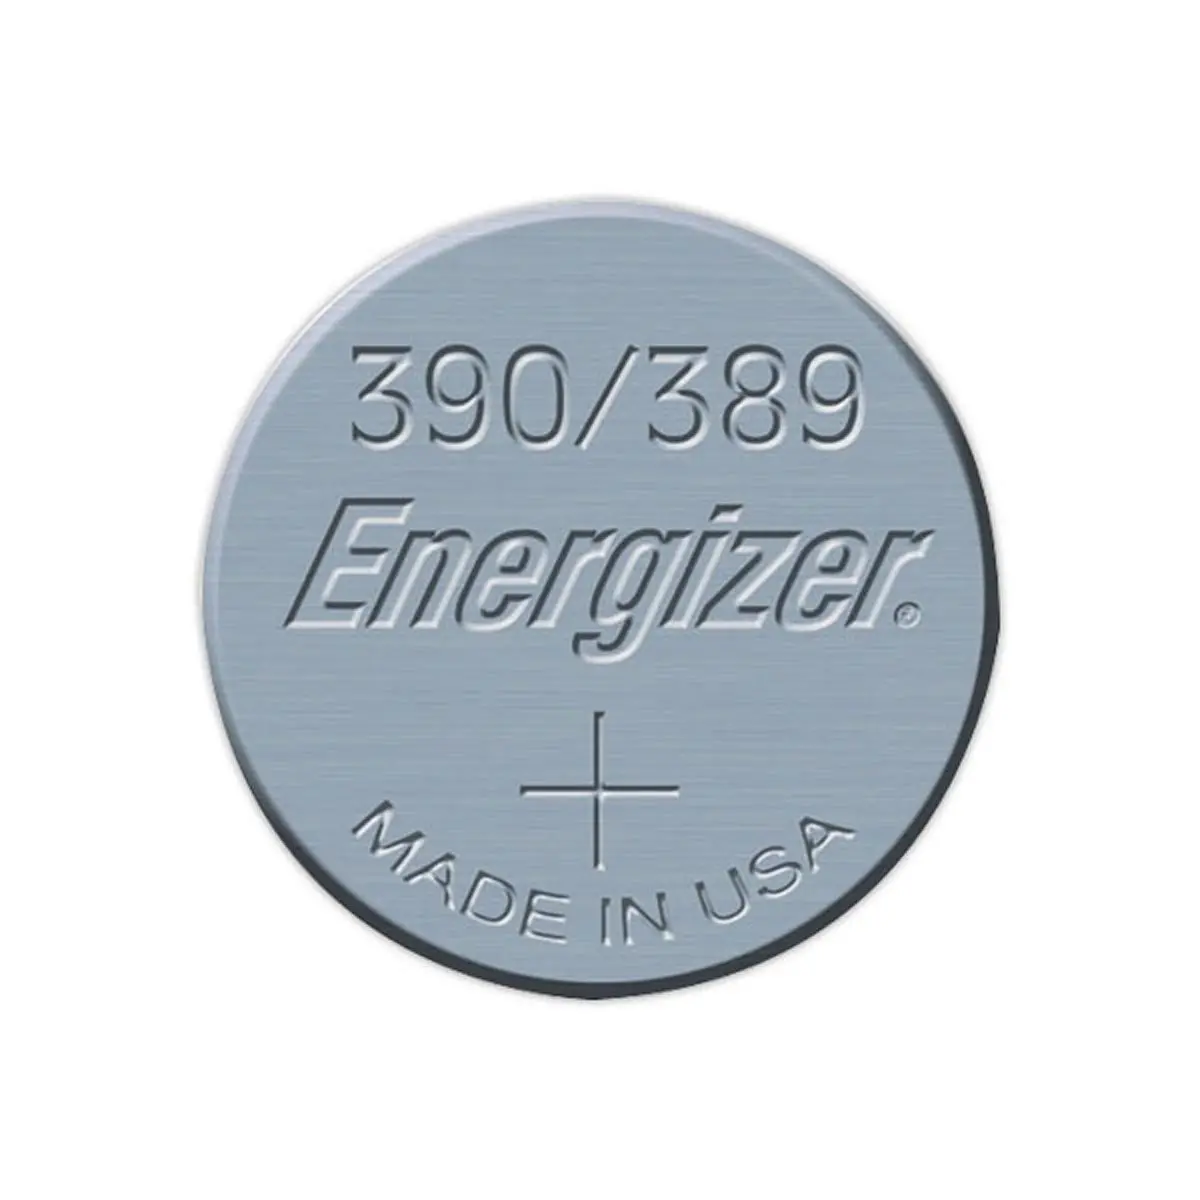 2 piles bouton SR 1130 pour appareils électroniques Energizer